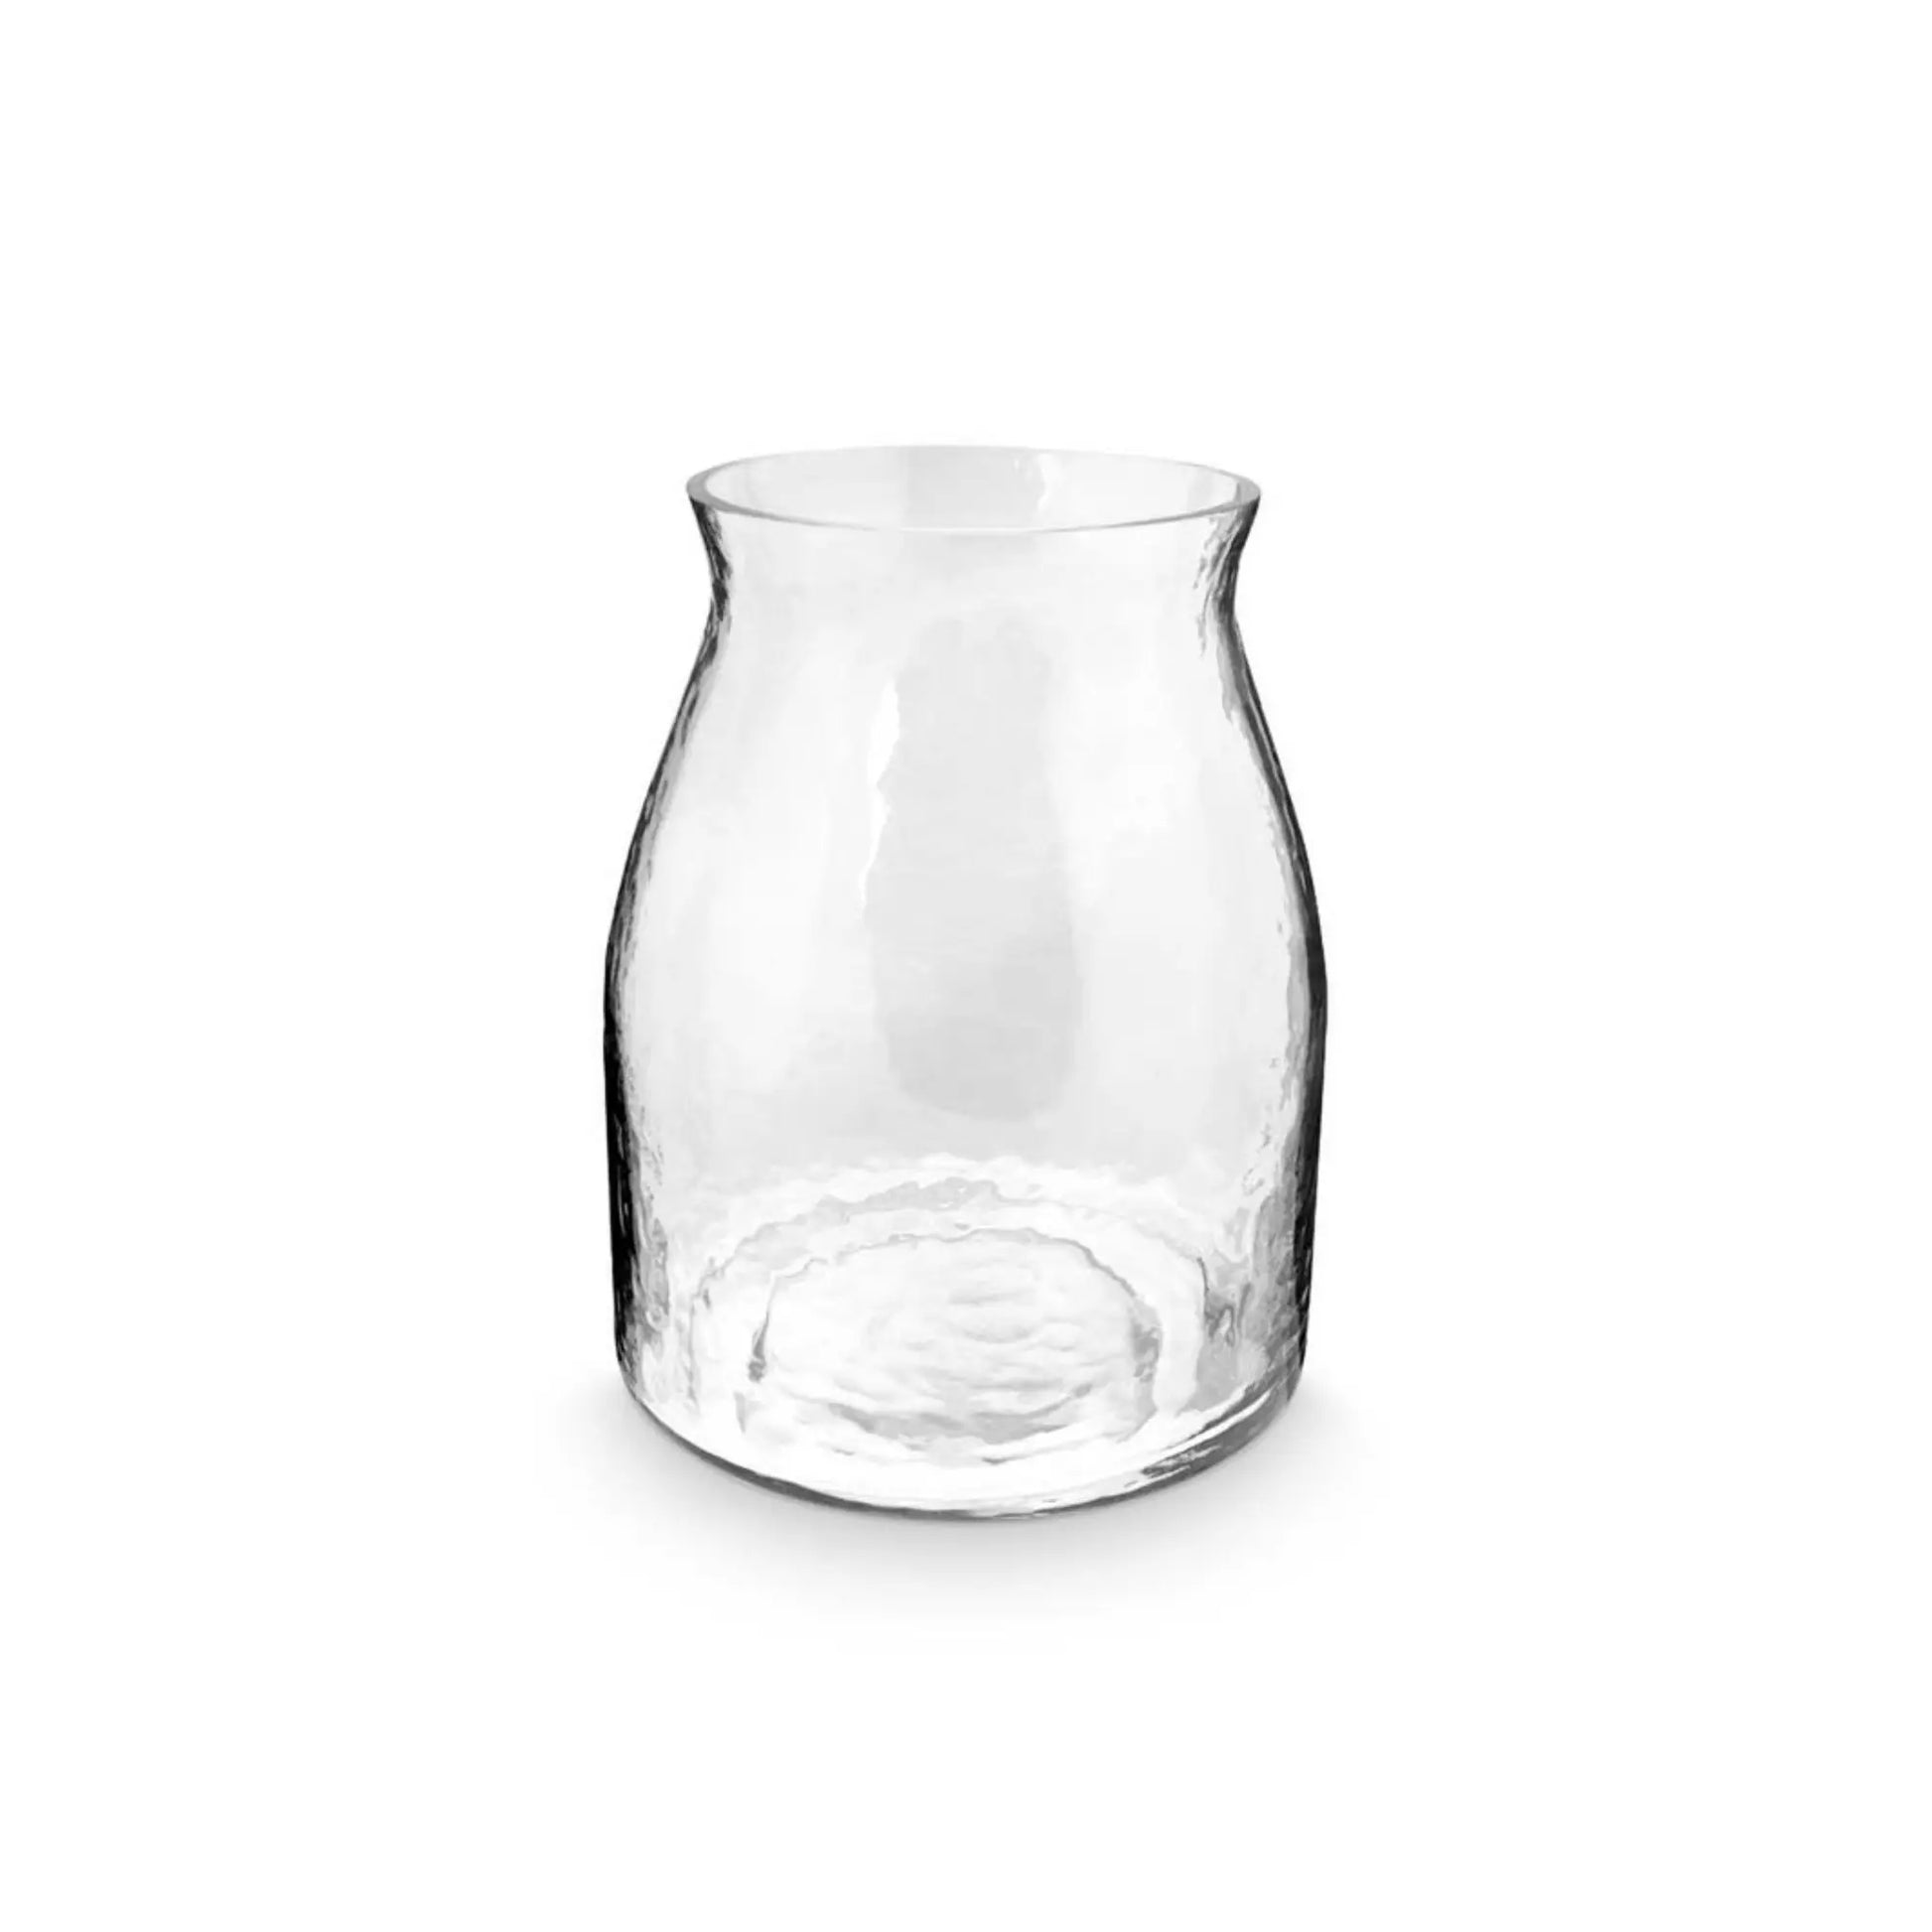 VT Wonen | Heldere vaas van gehamerd glas in tulpvorm | Conceptstore Sisalla